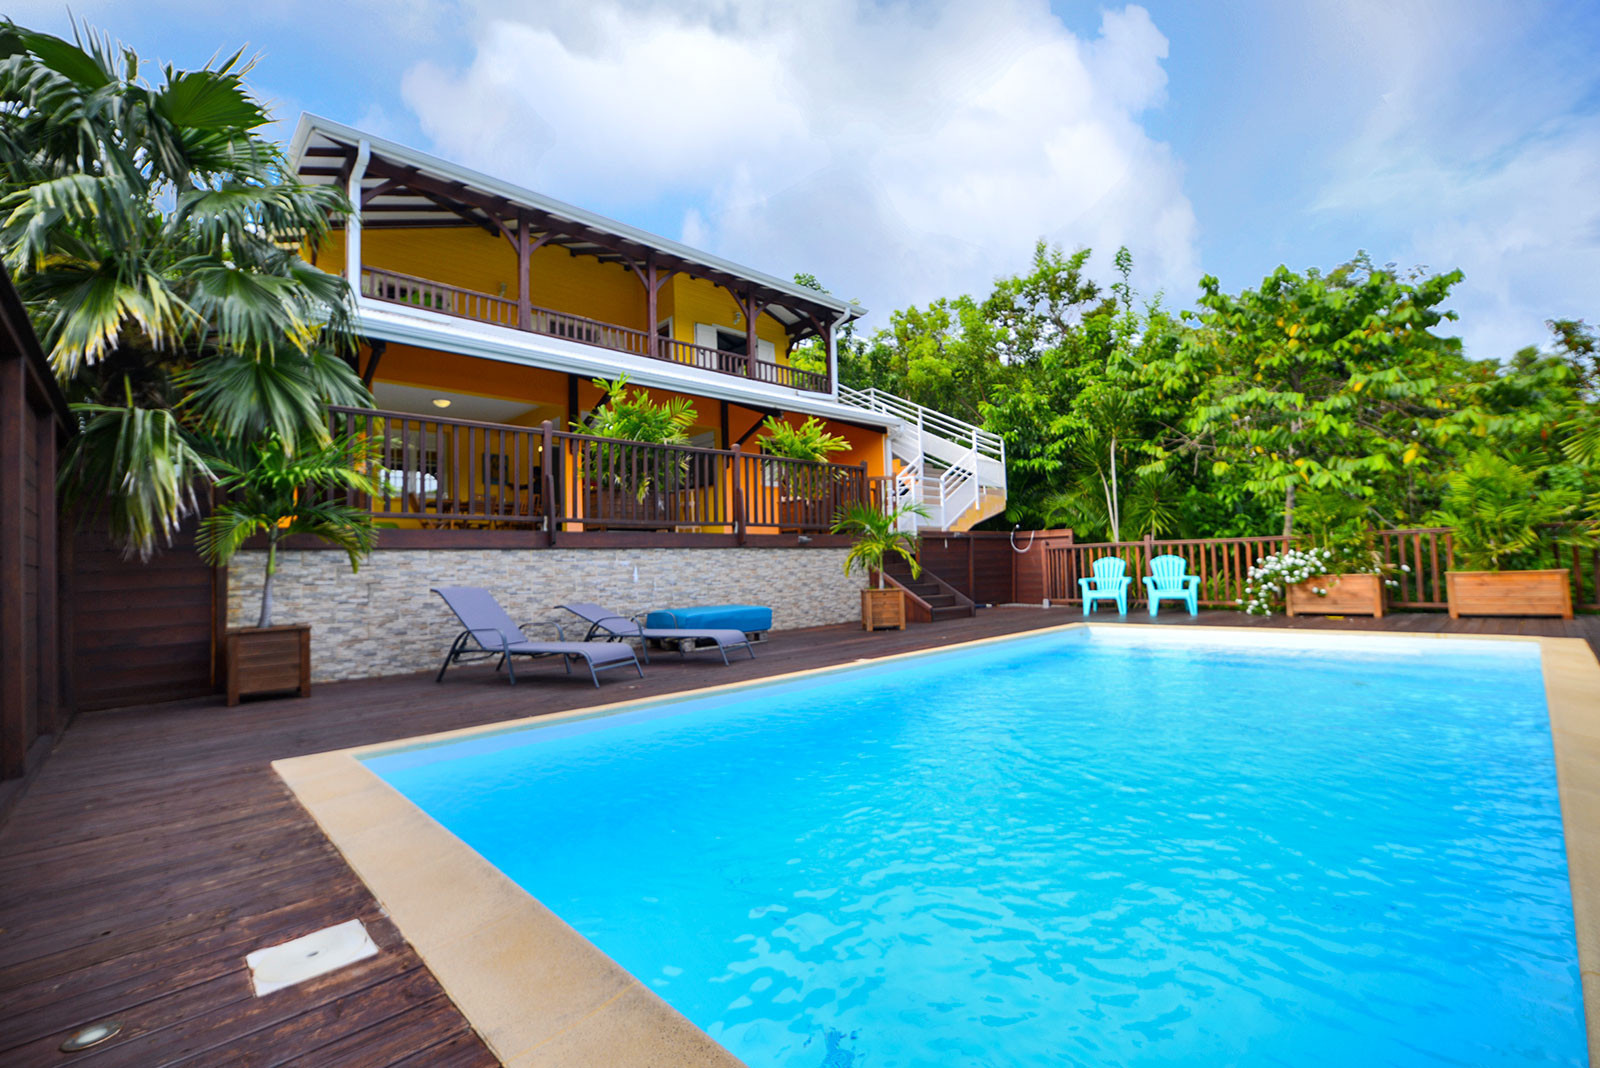 COEUR d'OR Haut de villa Sainte-Anne Martinique piscine à la campagne - La villa Coeur d'Or